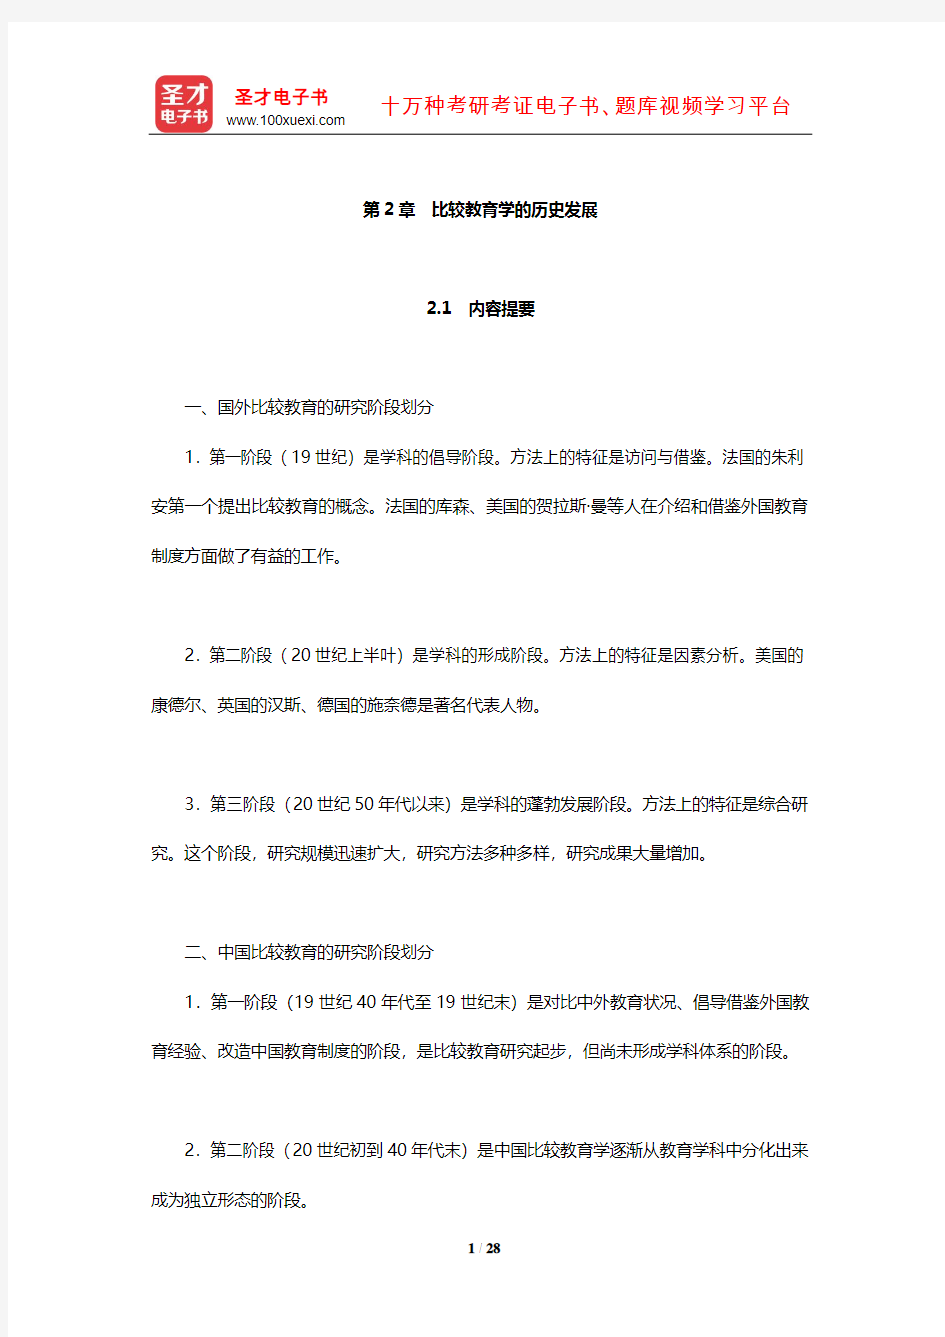 吴文侃、杨汉清《比较教育学》内容提要复习笔记及强化习题(比较教育学的历史发展)